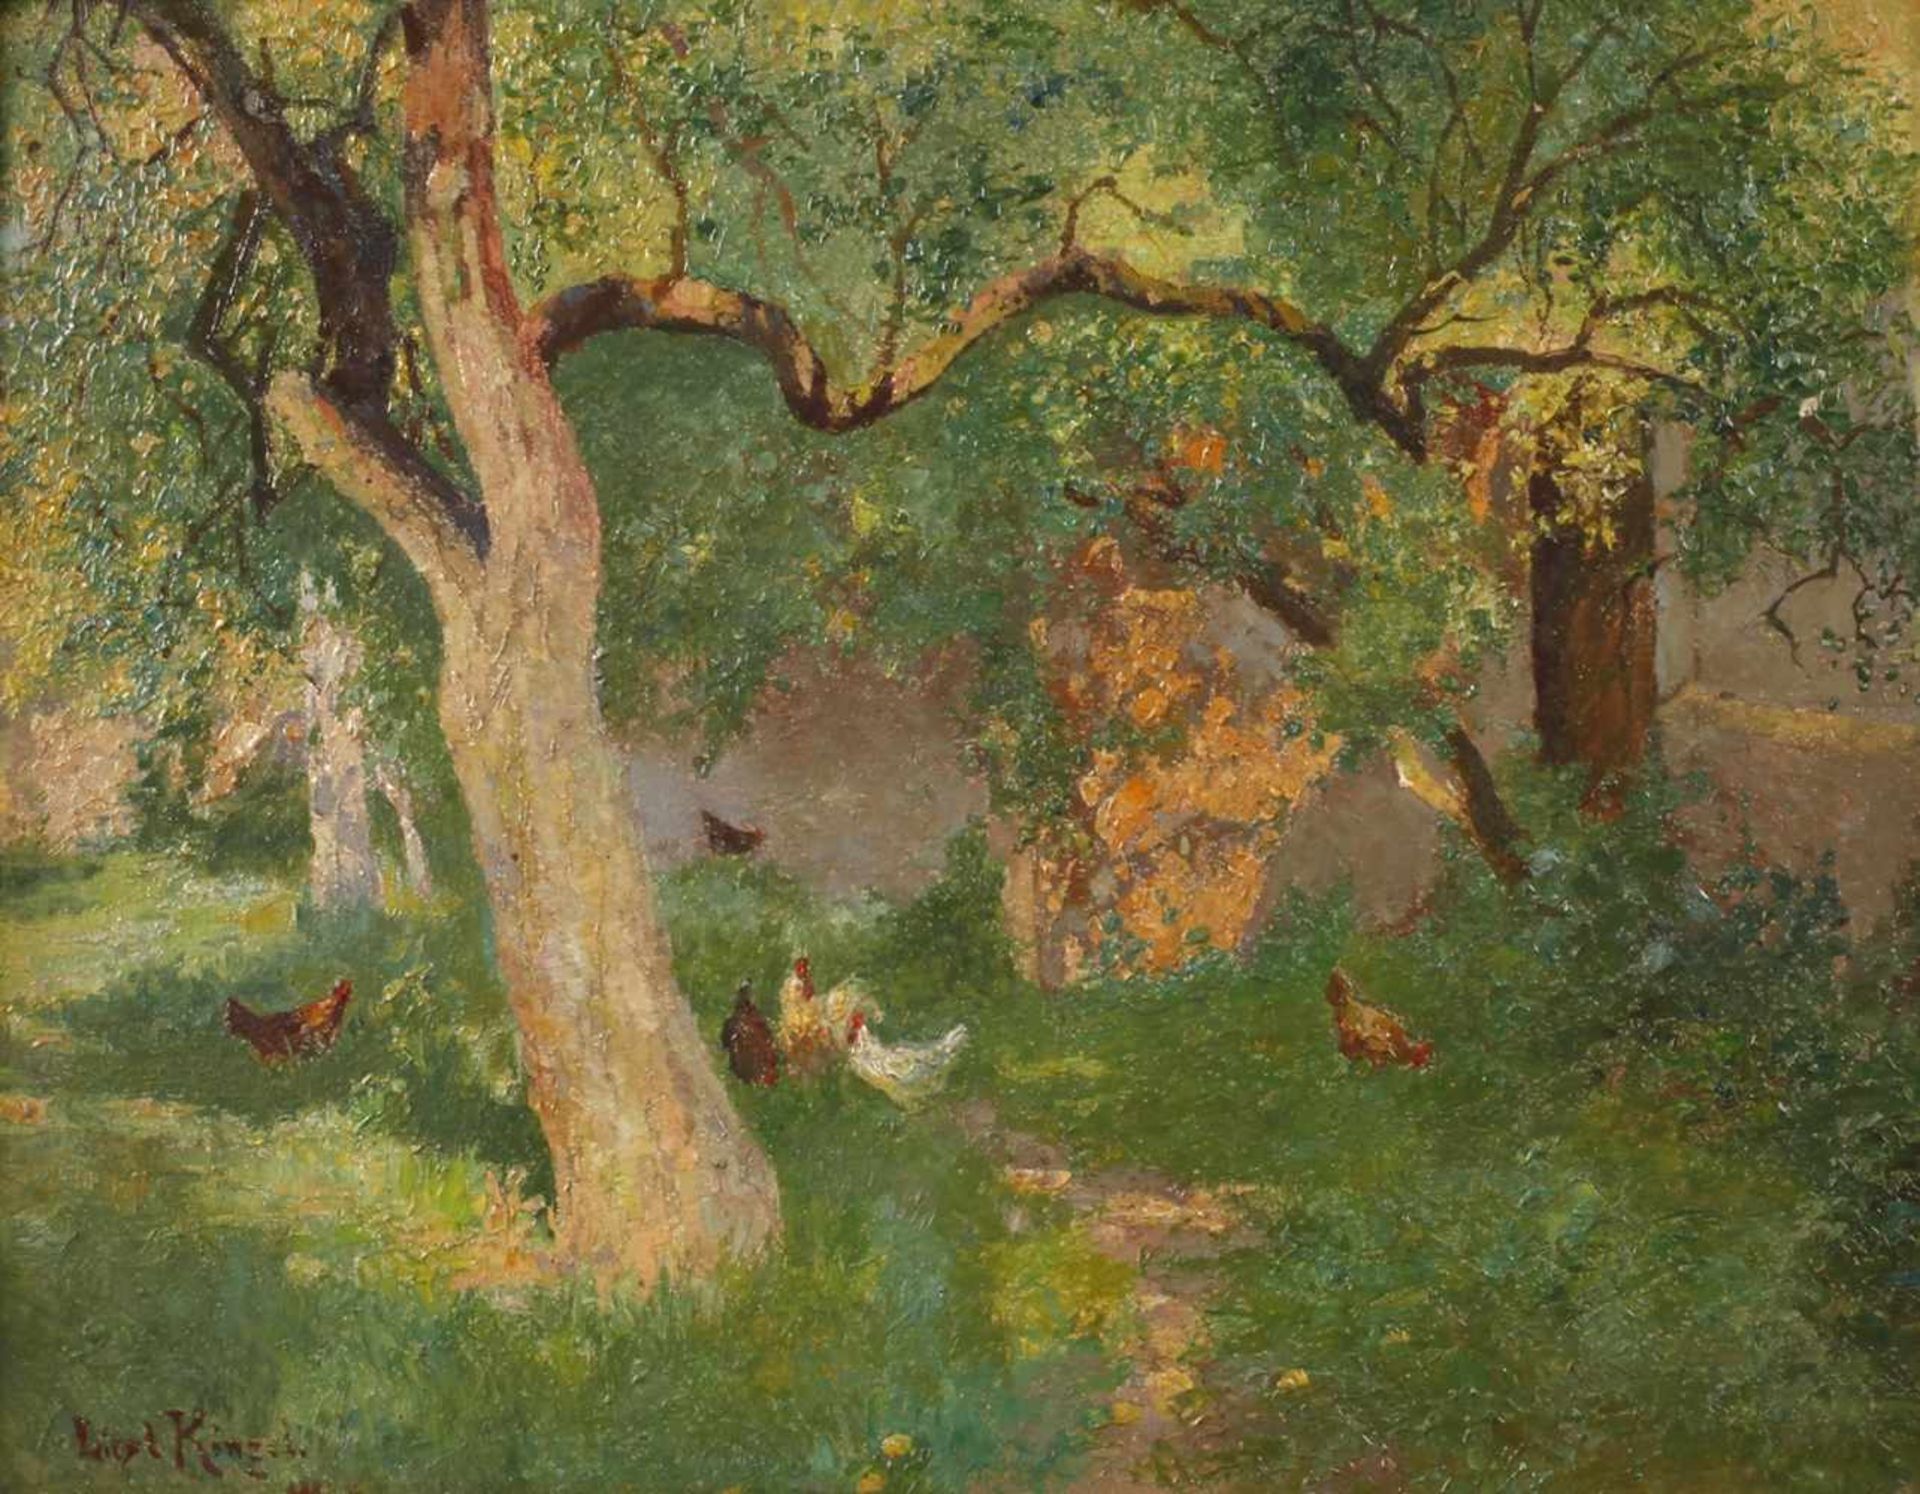 Liesl Kinzel, Hühner im Gartenidyllische sommerliche Gartenecke mit Hühnern im Schatten knorriger